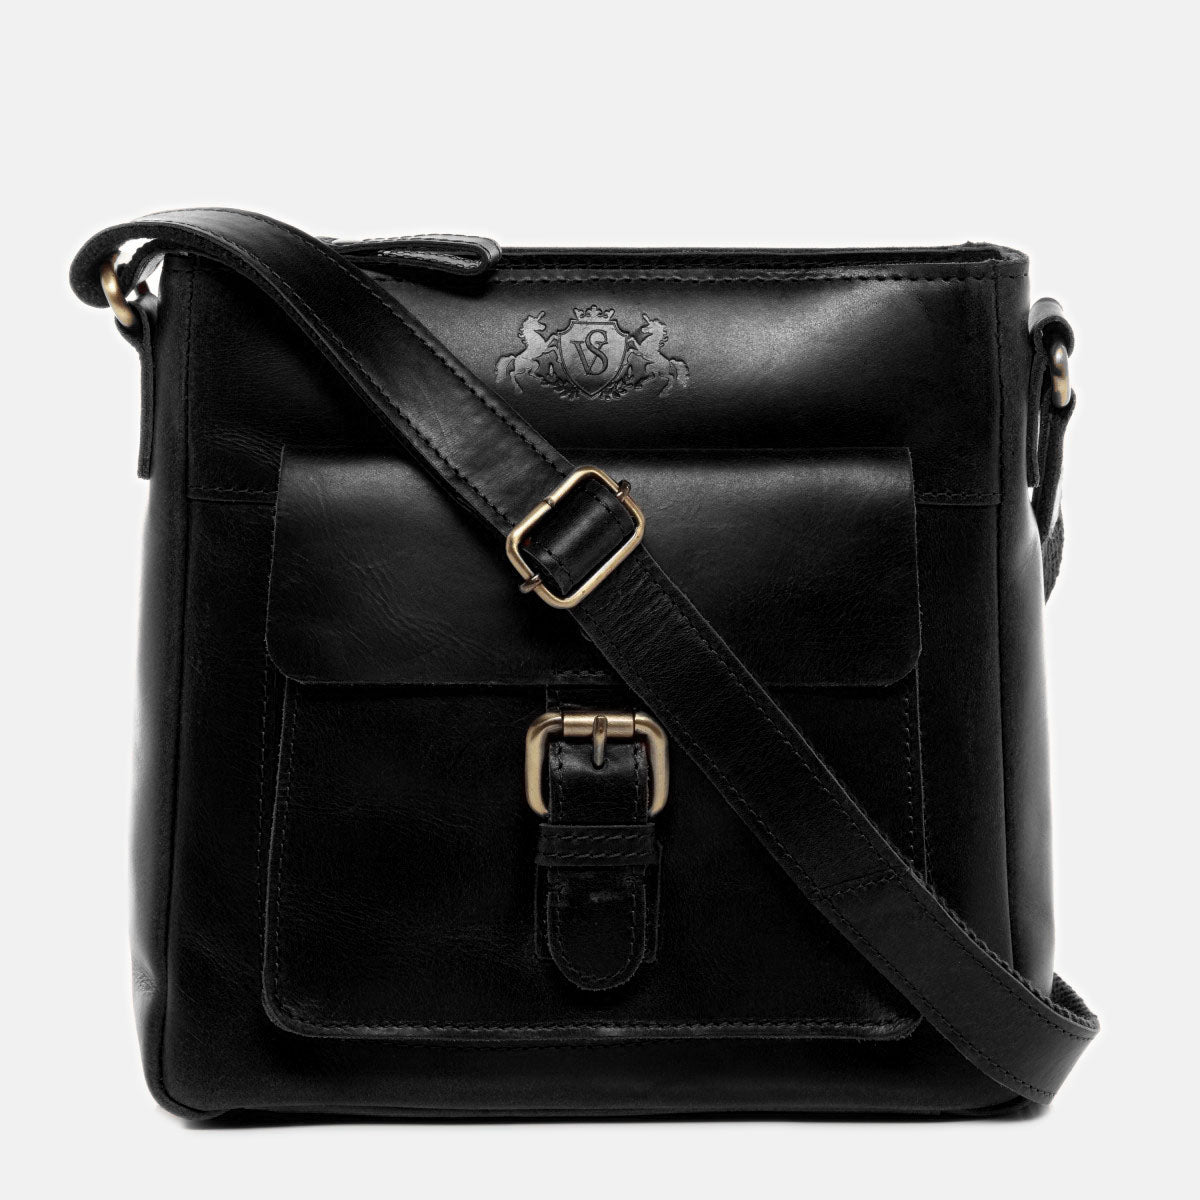 Shoulder bag YALE smooth leather black